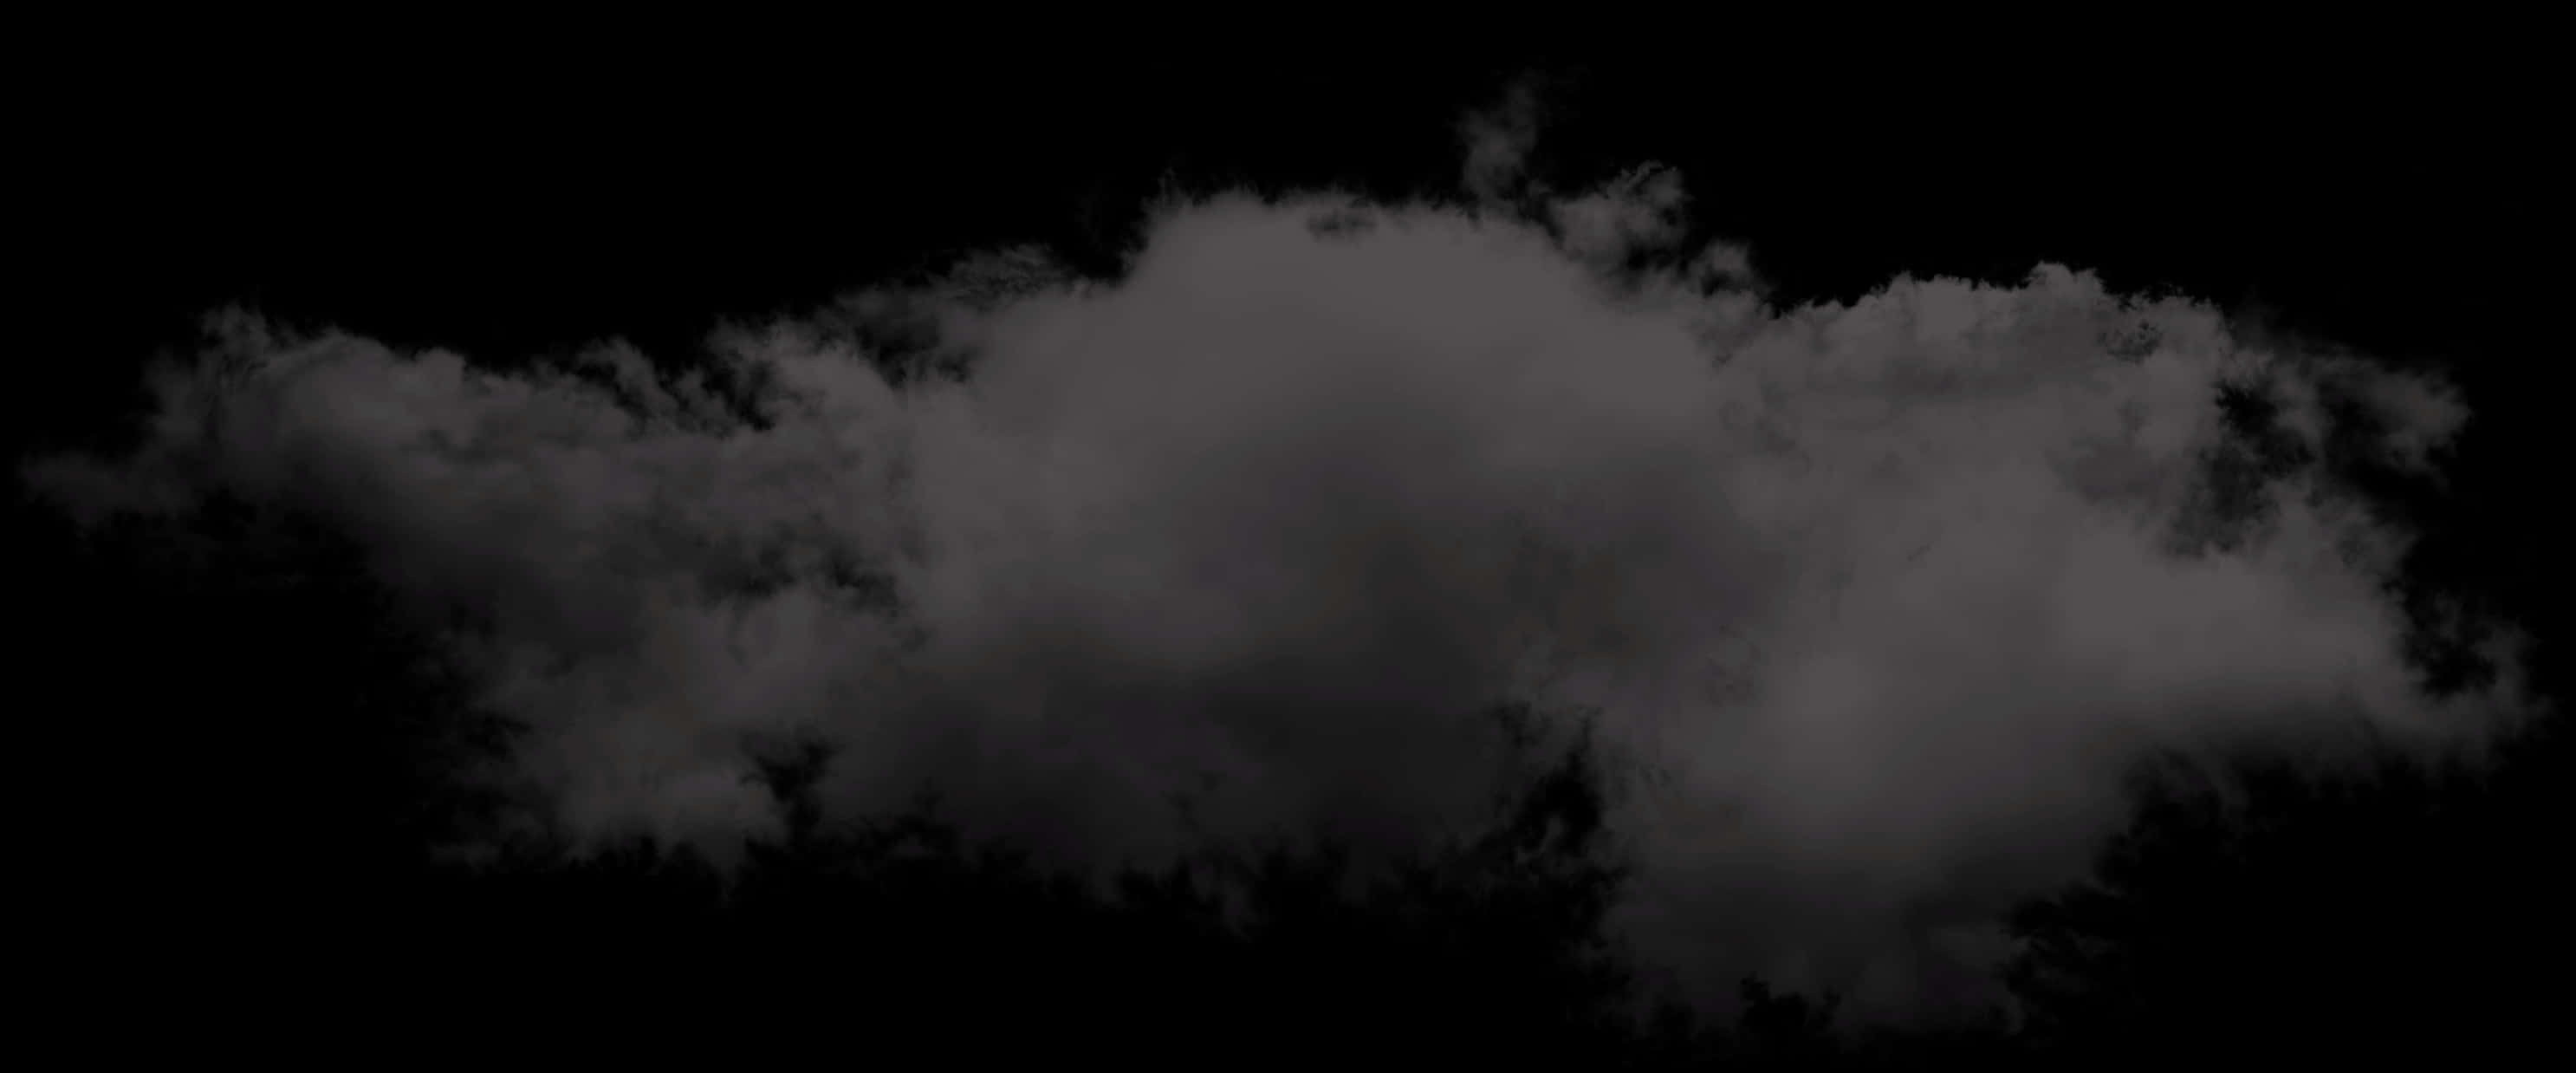 Download Dark Storm Clouds | Wallpapers.com